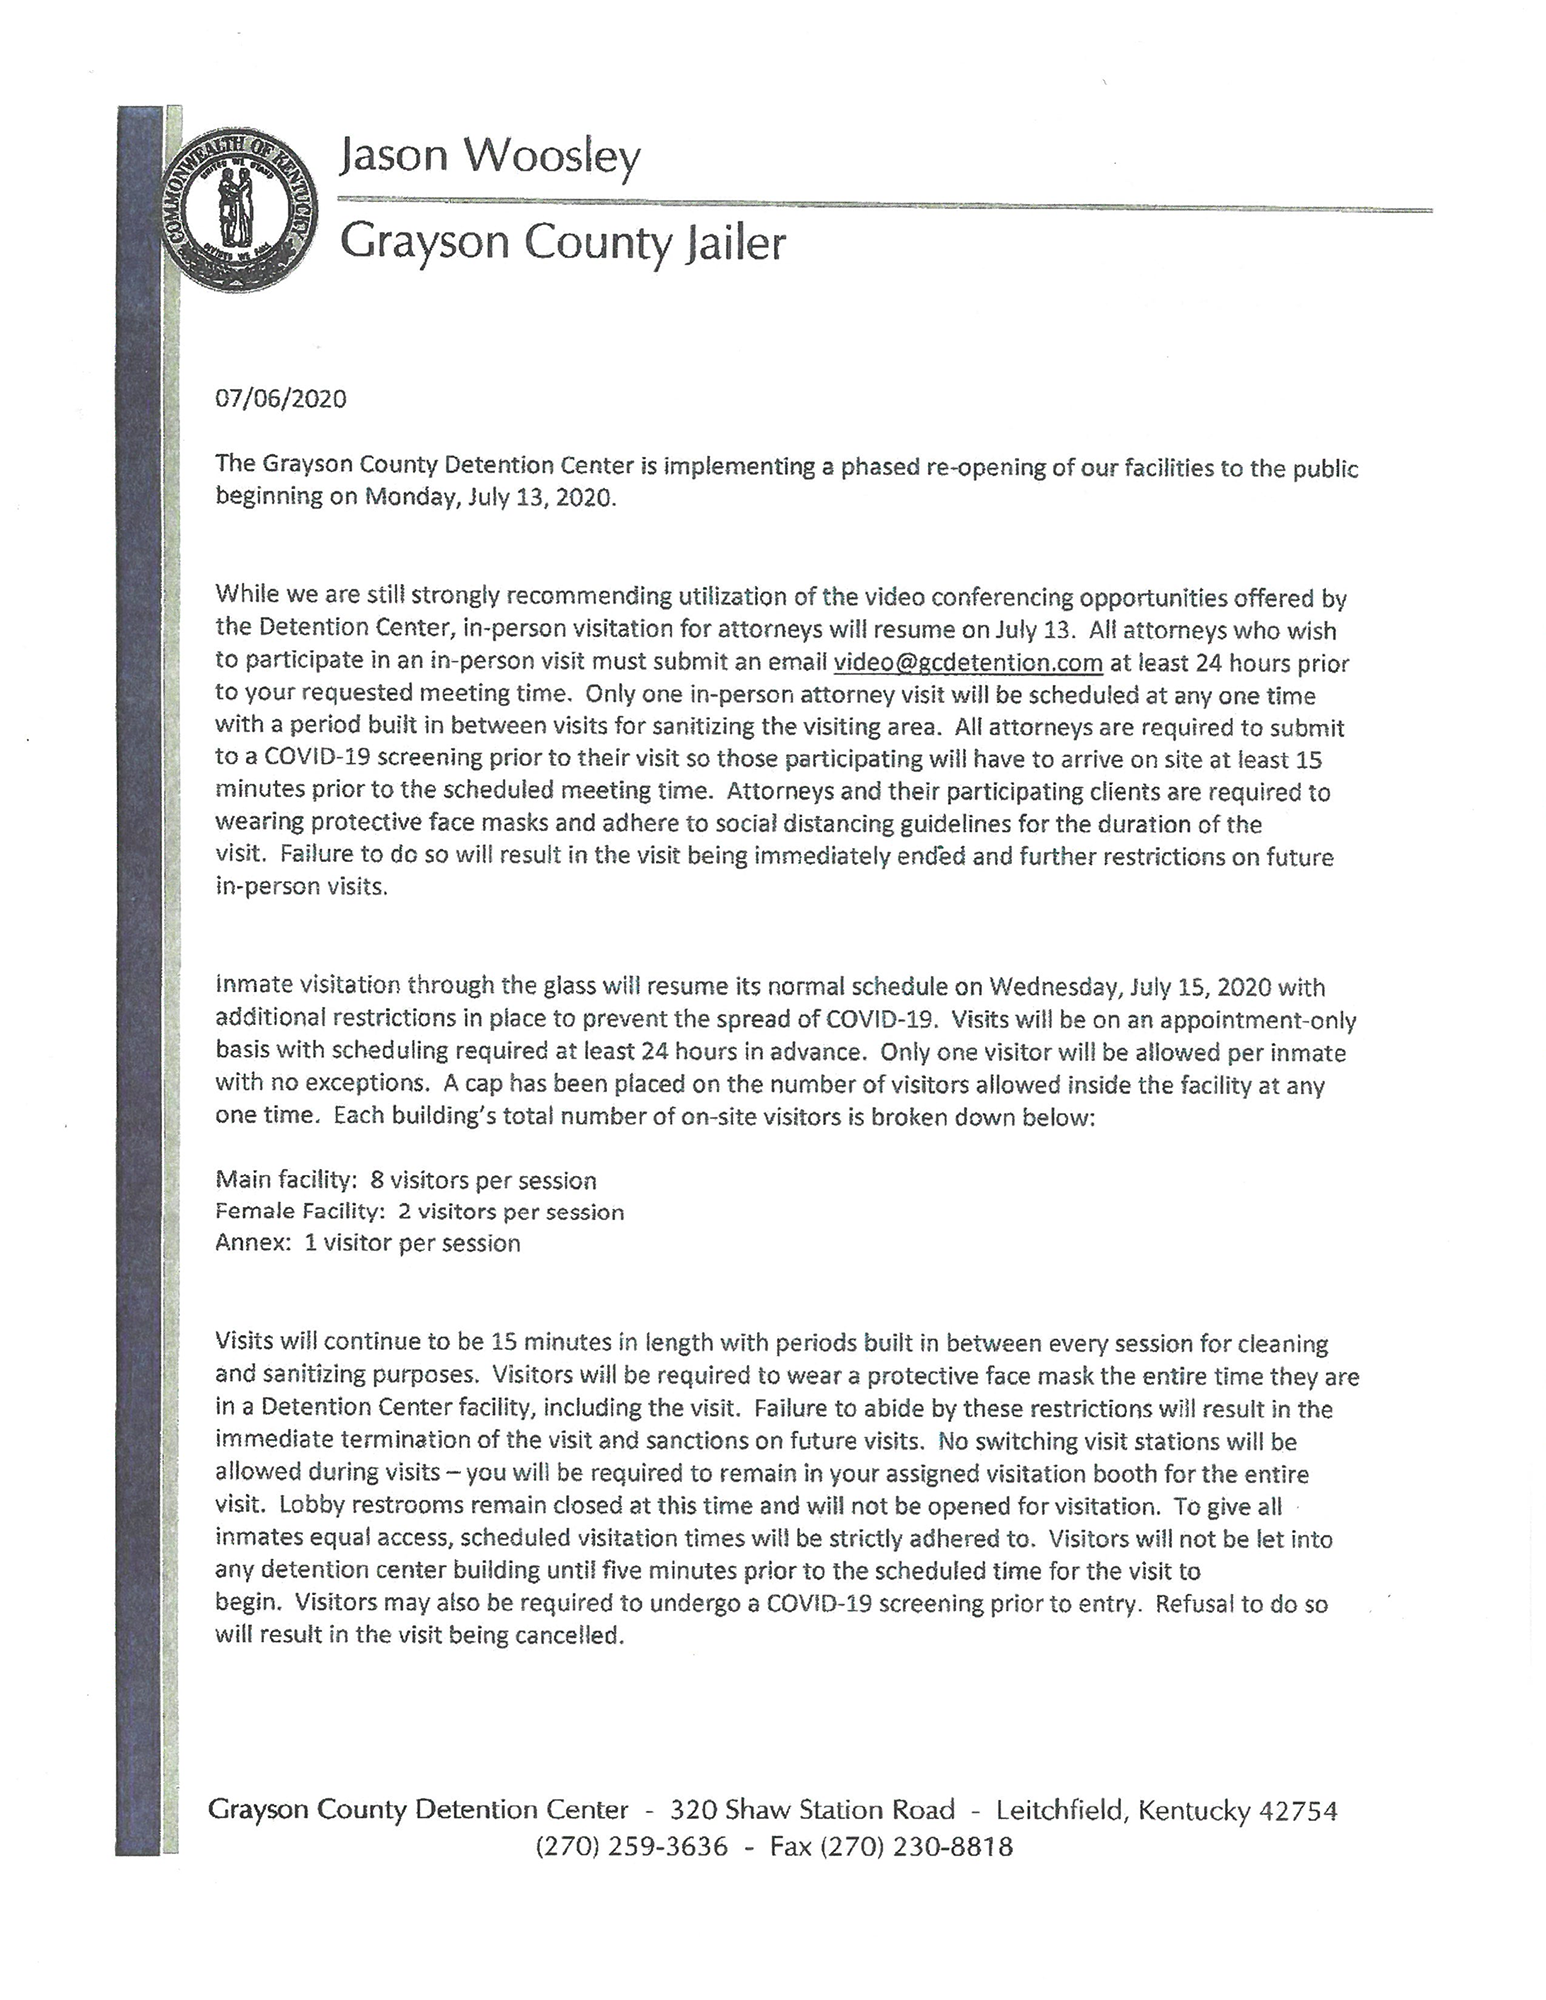 Grayson County Jailer's Memorandum Letter